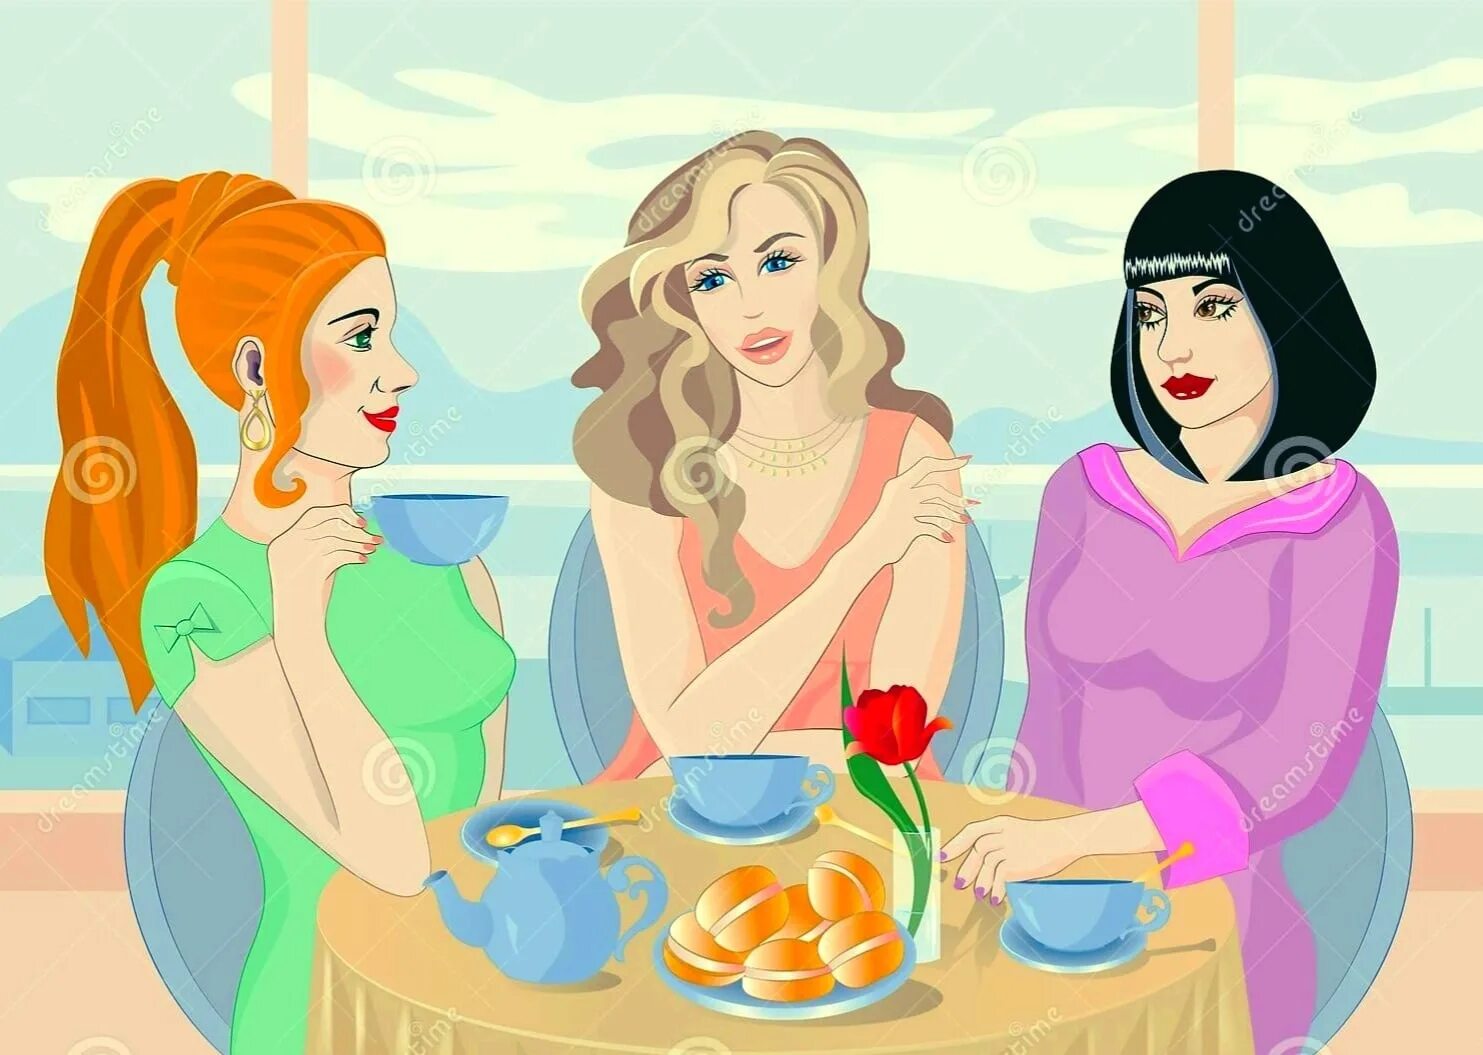 Еду сестру маму. Чаепитие с подружками. Три девушки за столом. Три подружки в кафе. Иллюстрации подружки в кафе.